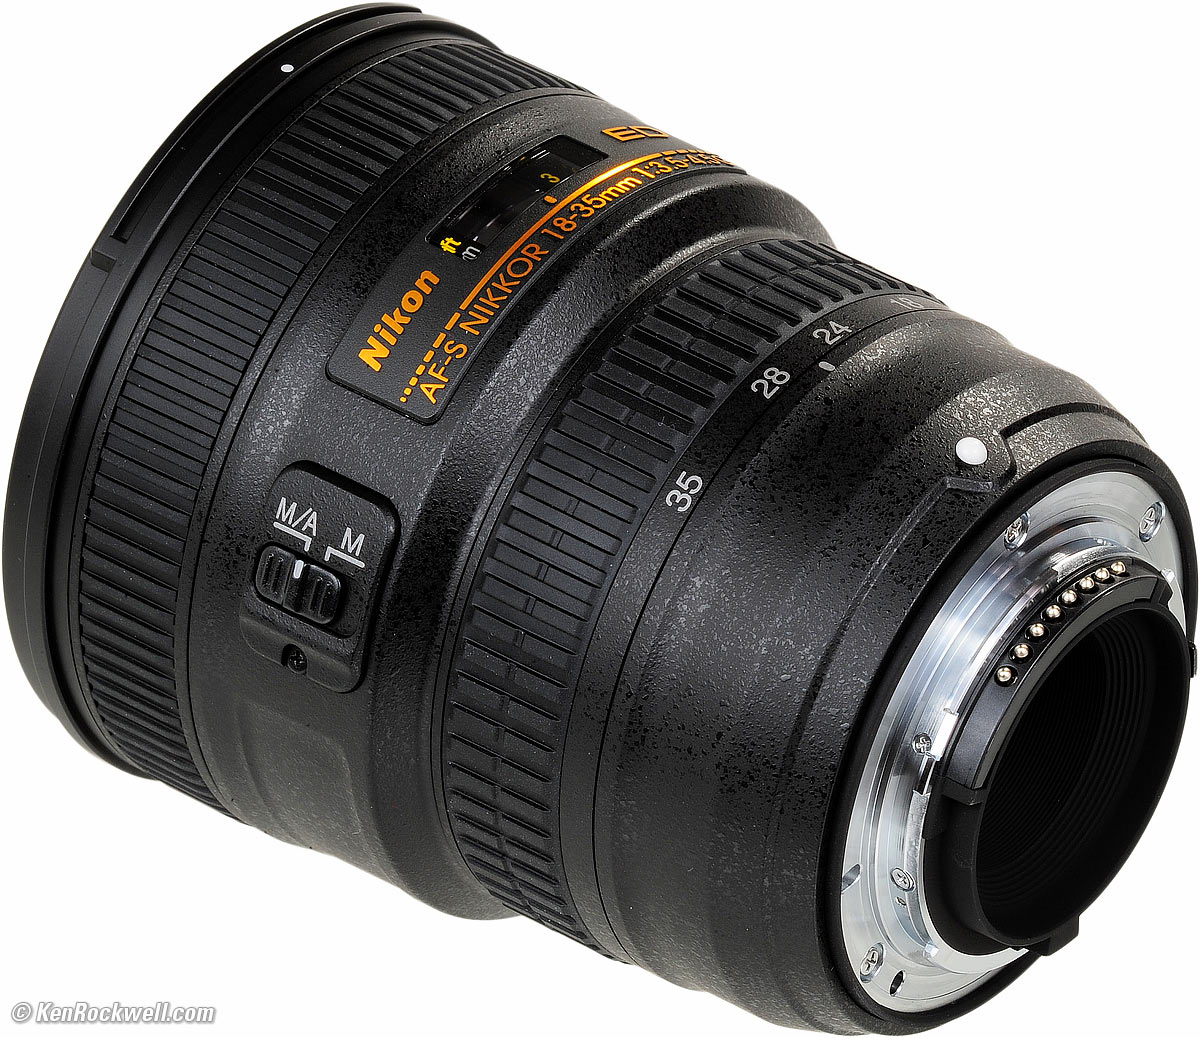 paraplu Stap verlies uzelf Nikon 18-35mm f/3.5-4.5 G Review